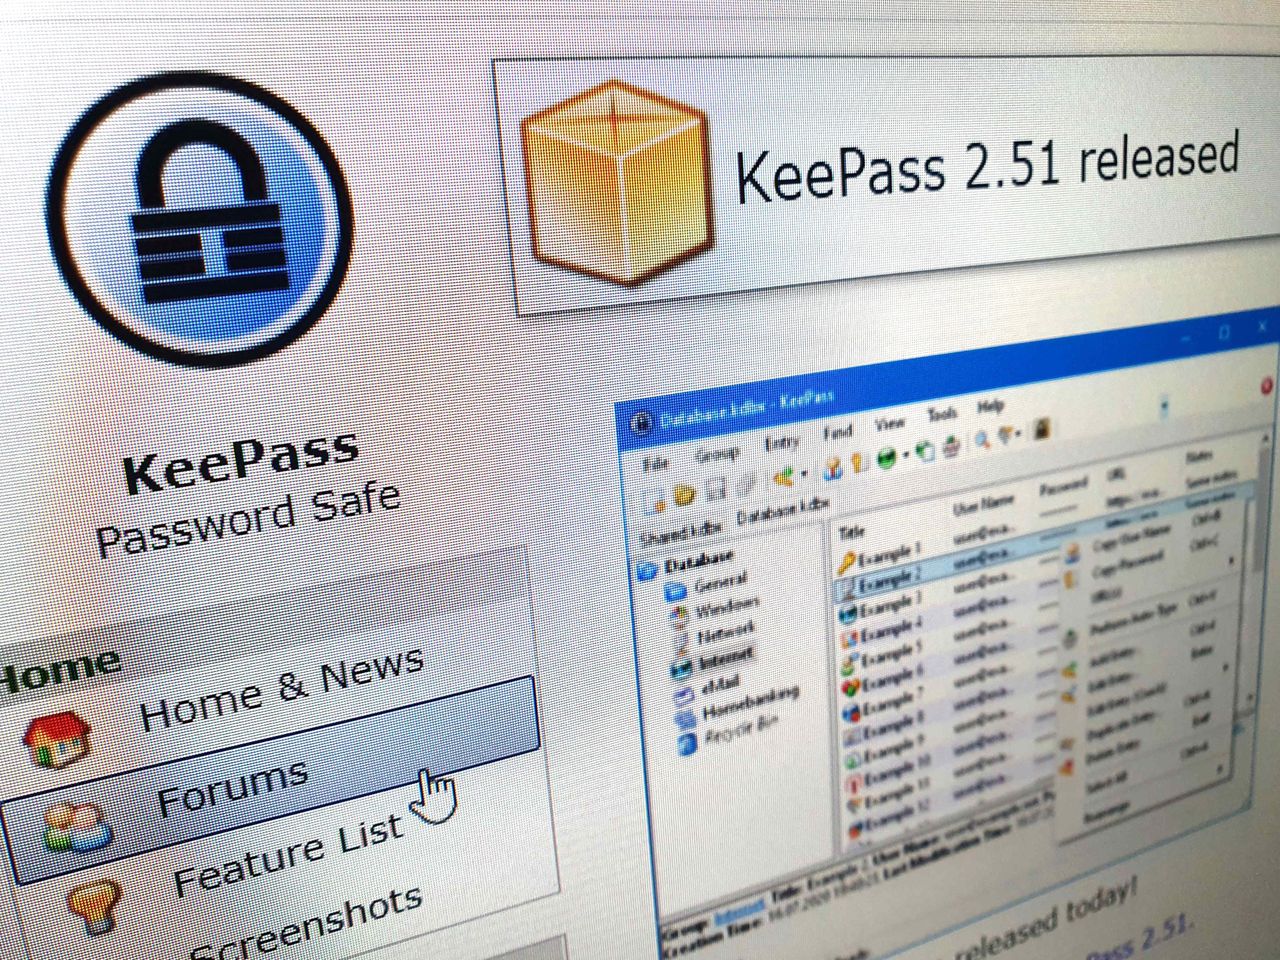 KeePass 2.51 do pobrania. Są poprawki w interfejsie - Strona internetowa KeePass